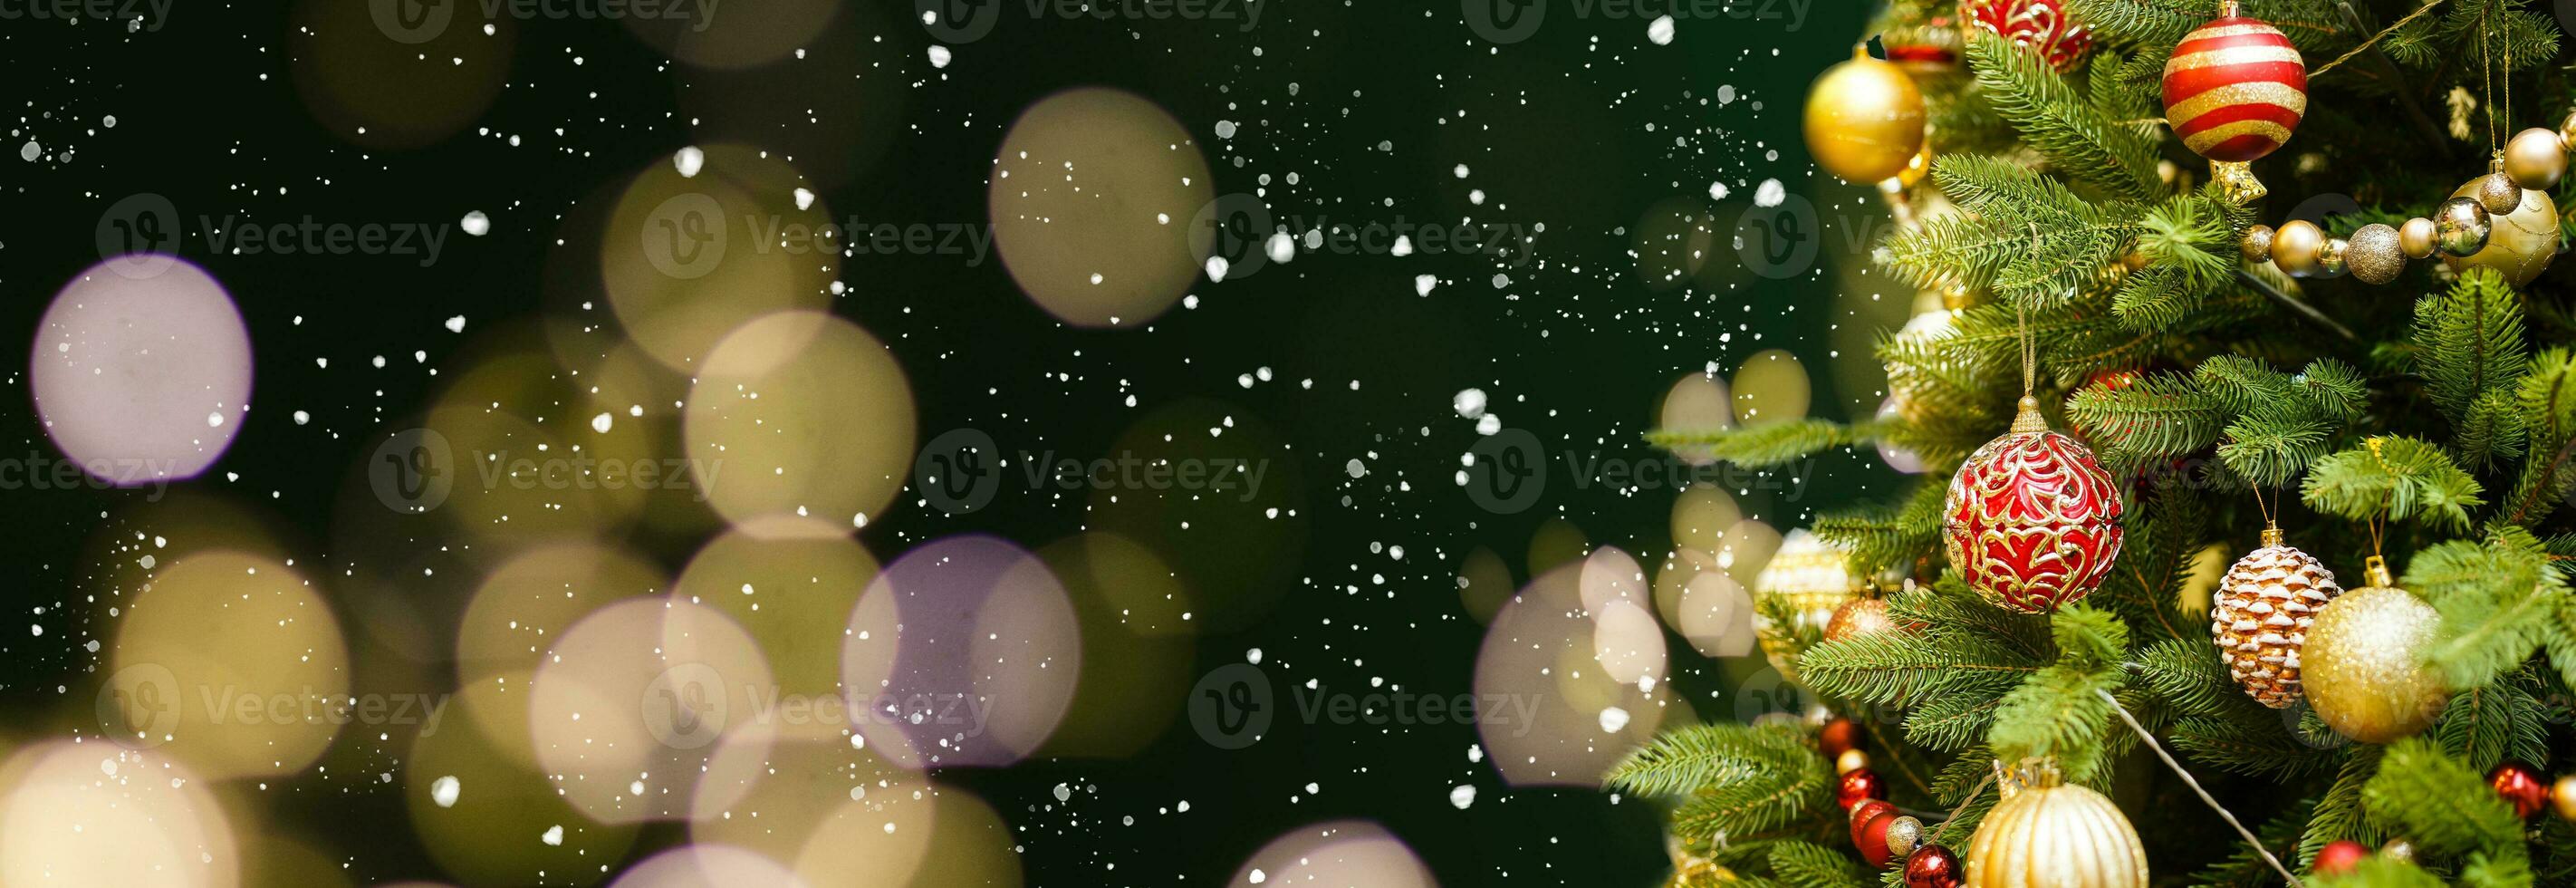 fundo dourado de natal com luzes desfocadas e árvore decorada foto